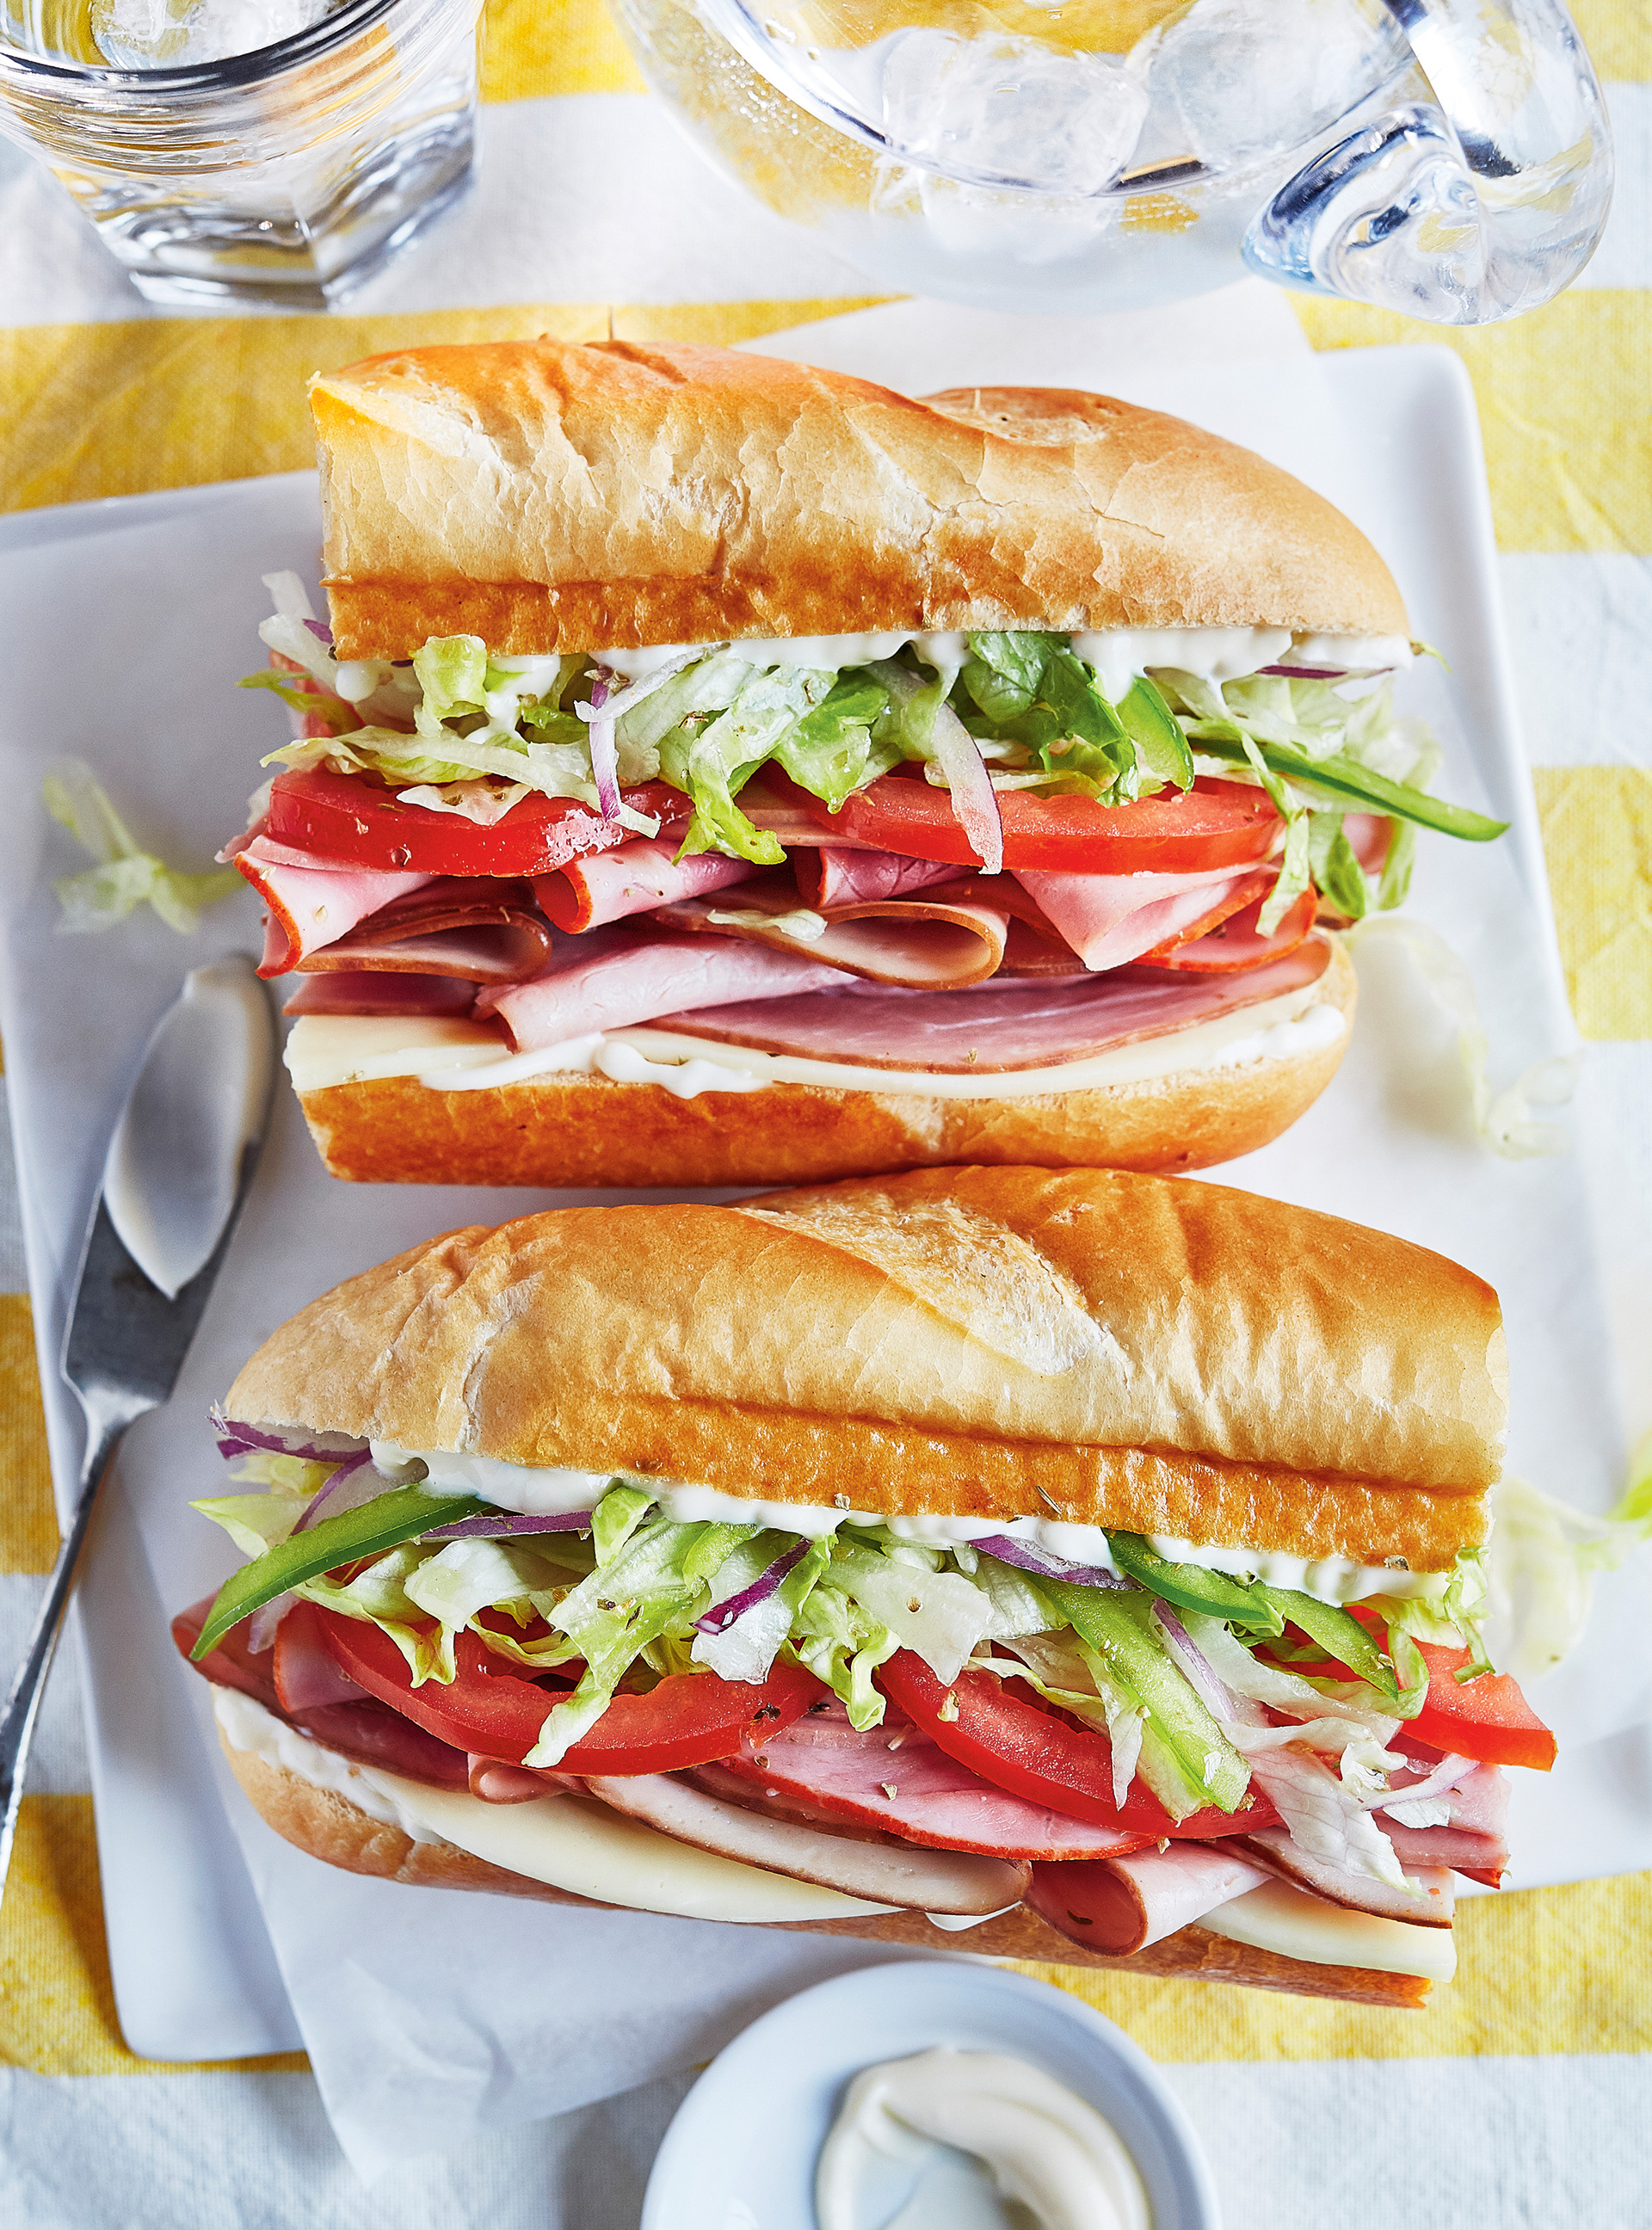 Classic Cold-Cut Sub Sandwiches